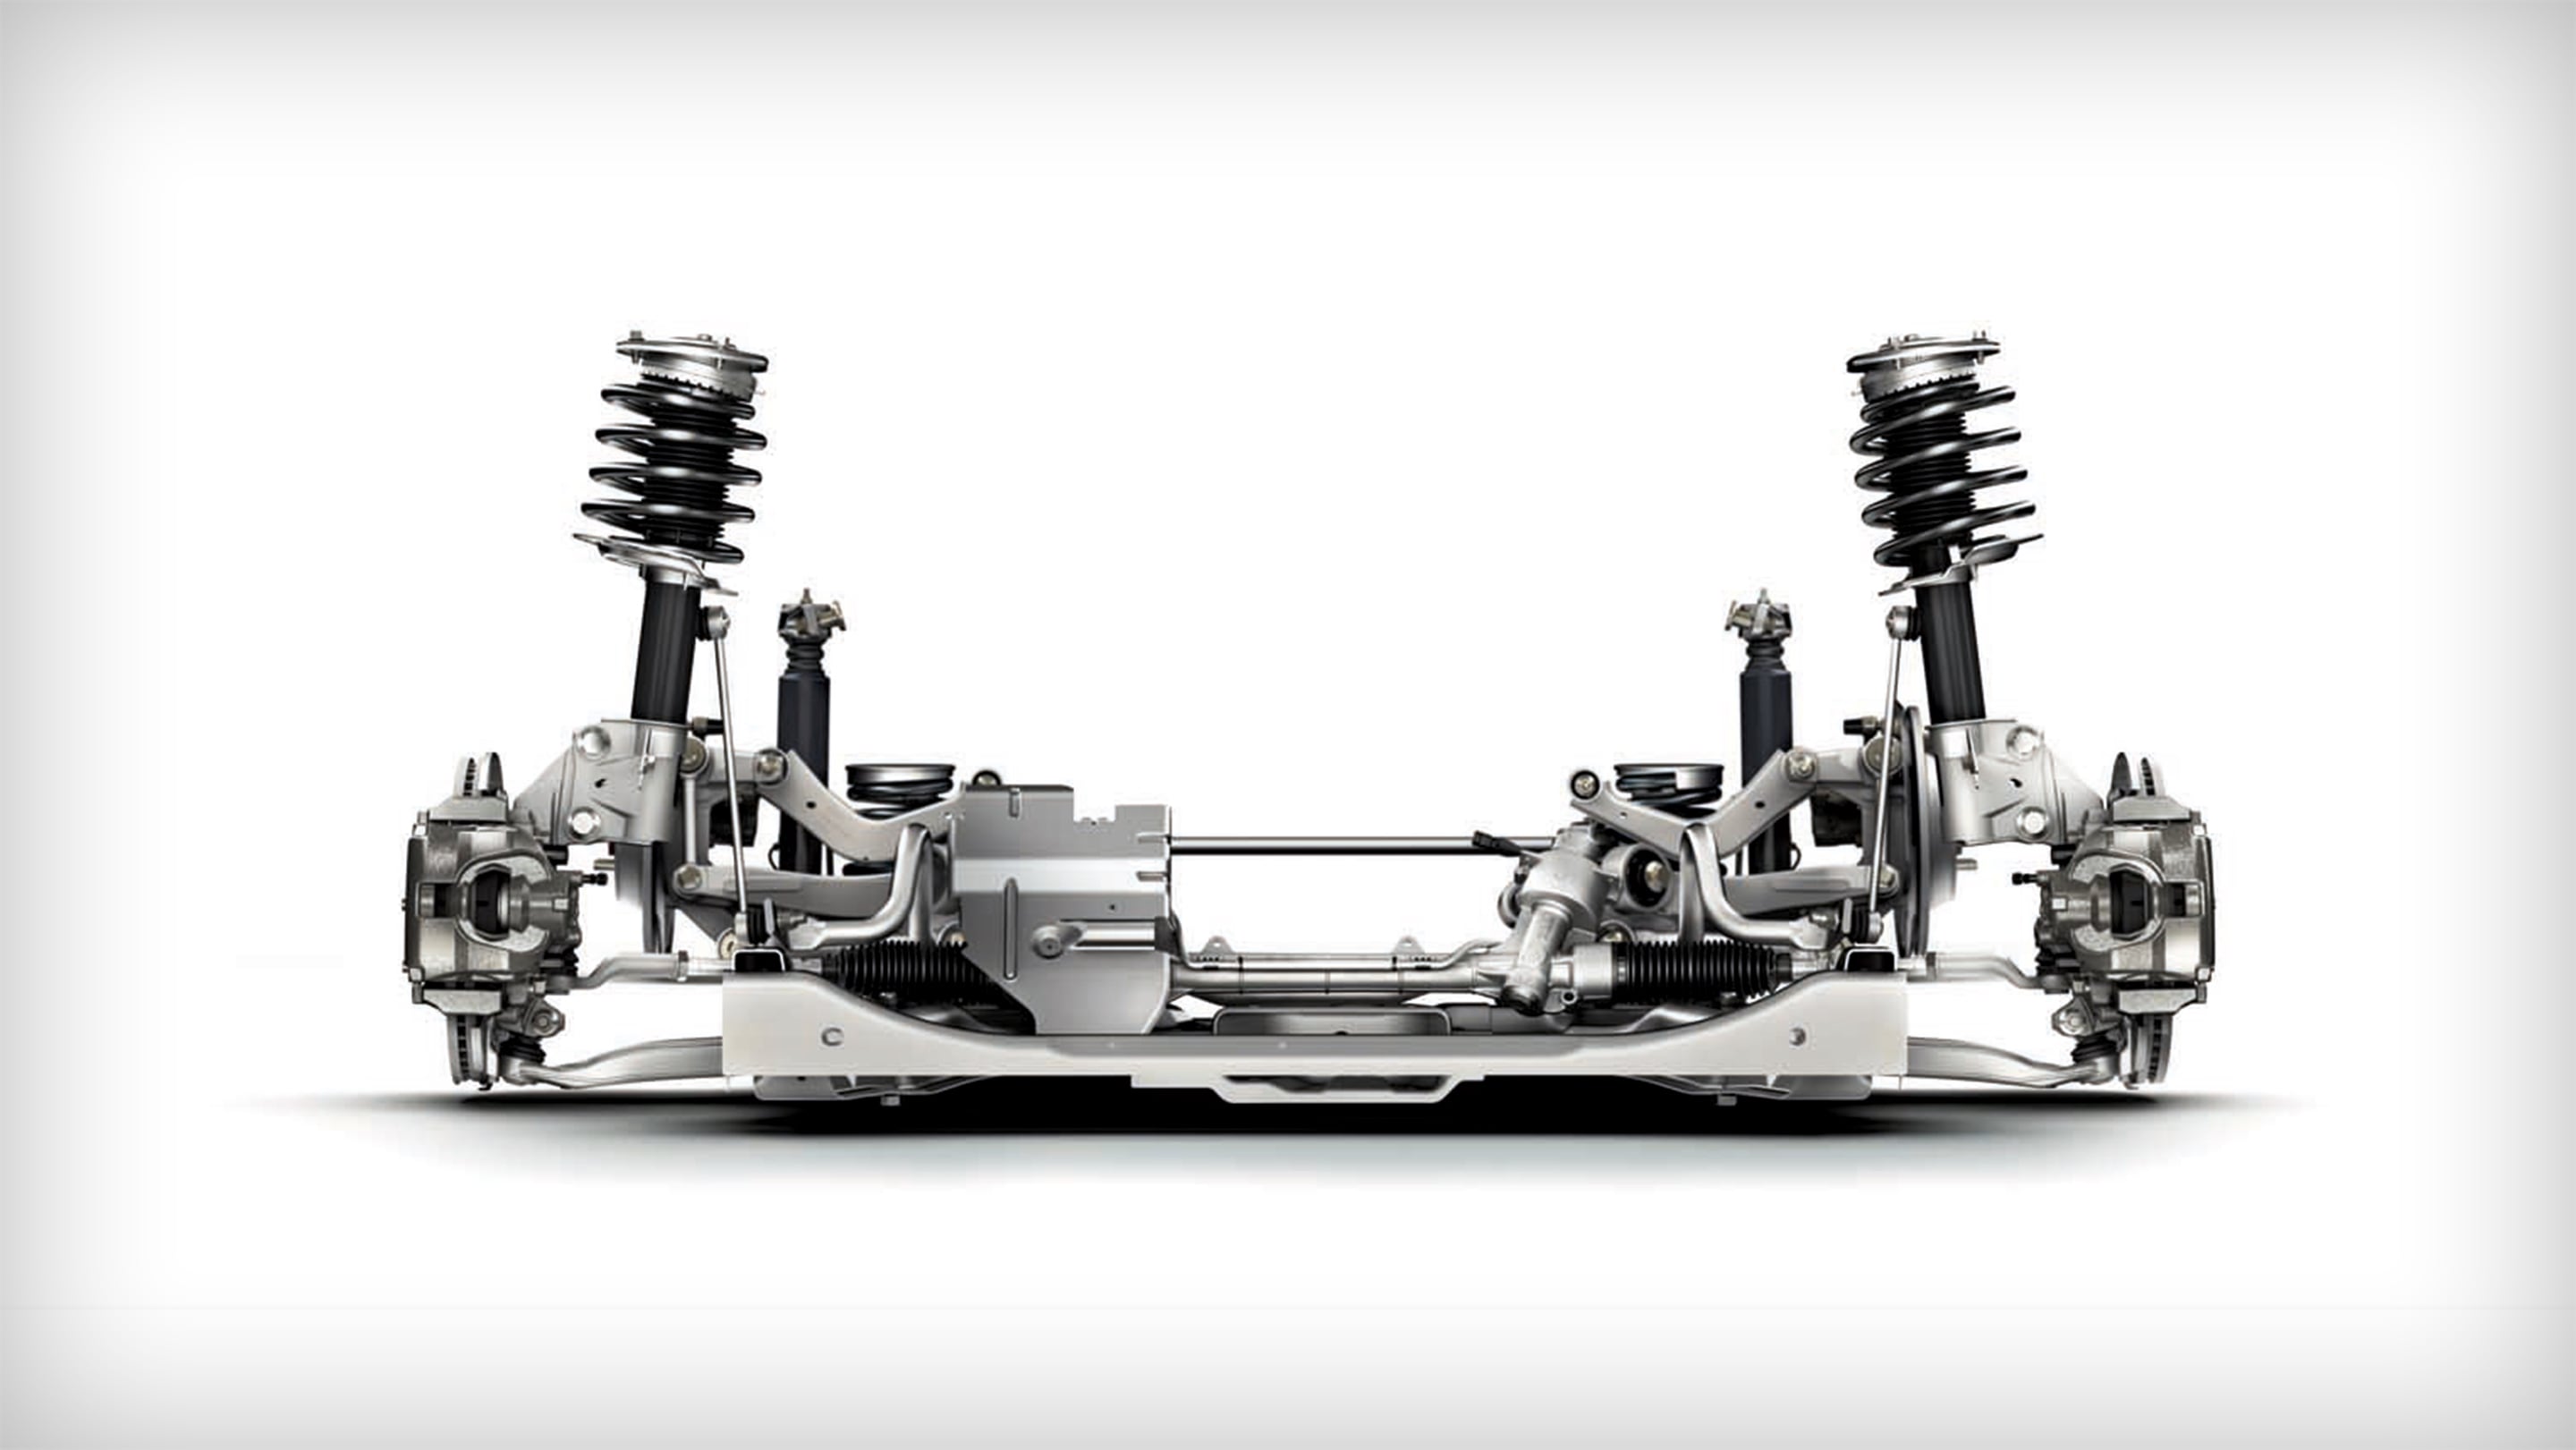 All-new advanced multi-link rear suspension